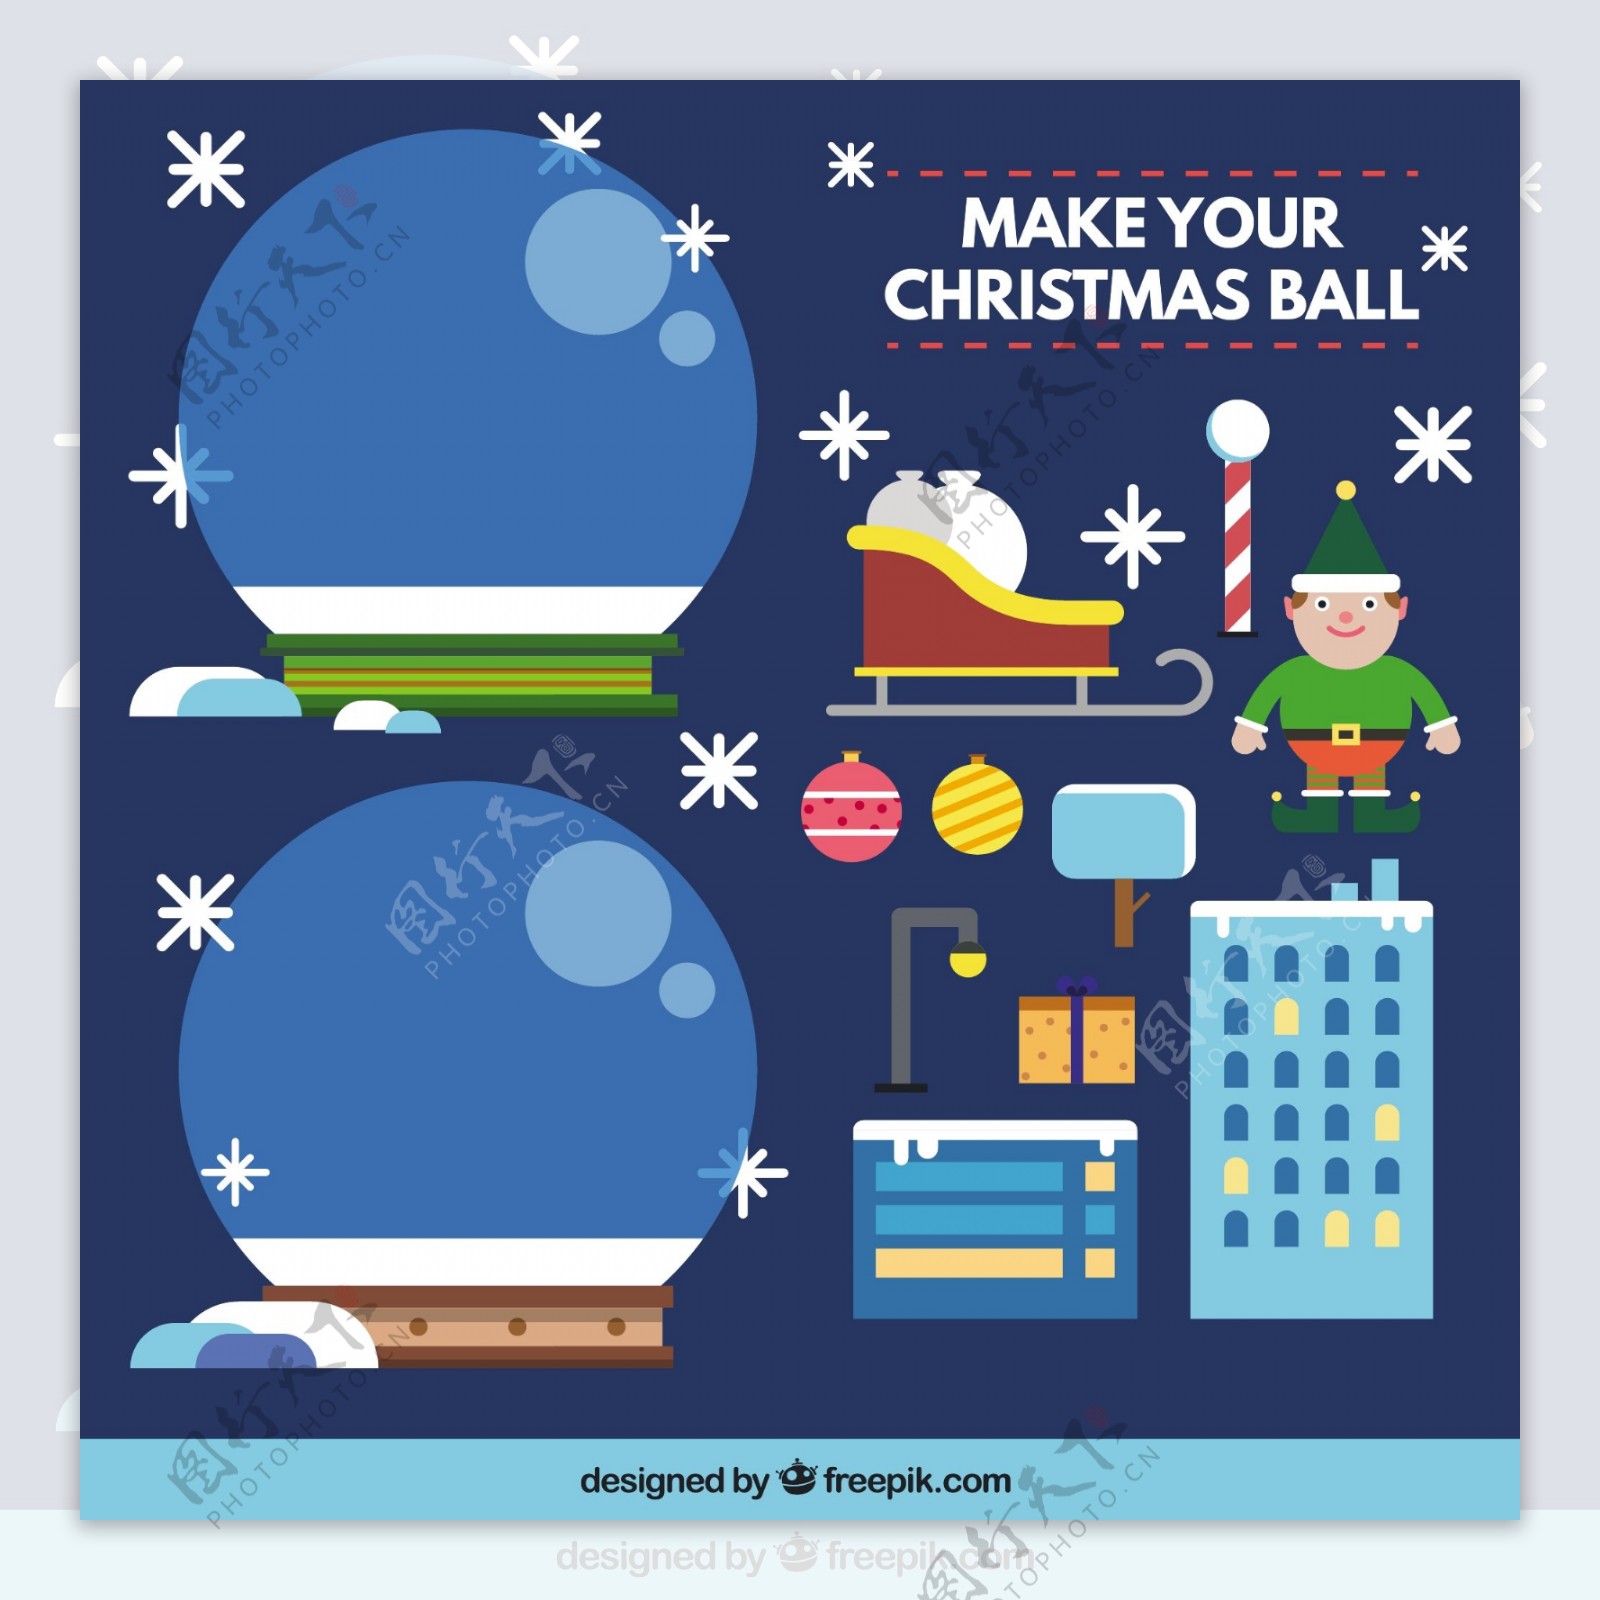 让你的圣诞水晶球